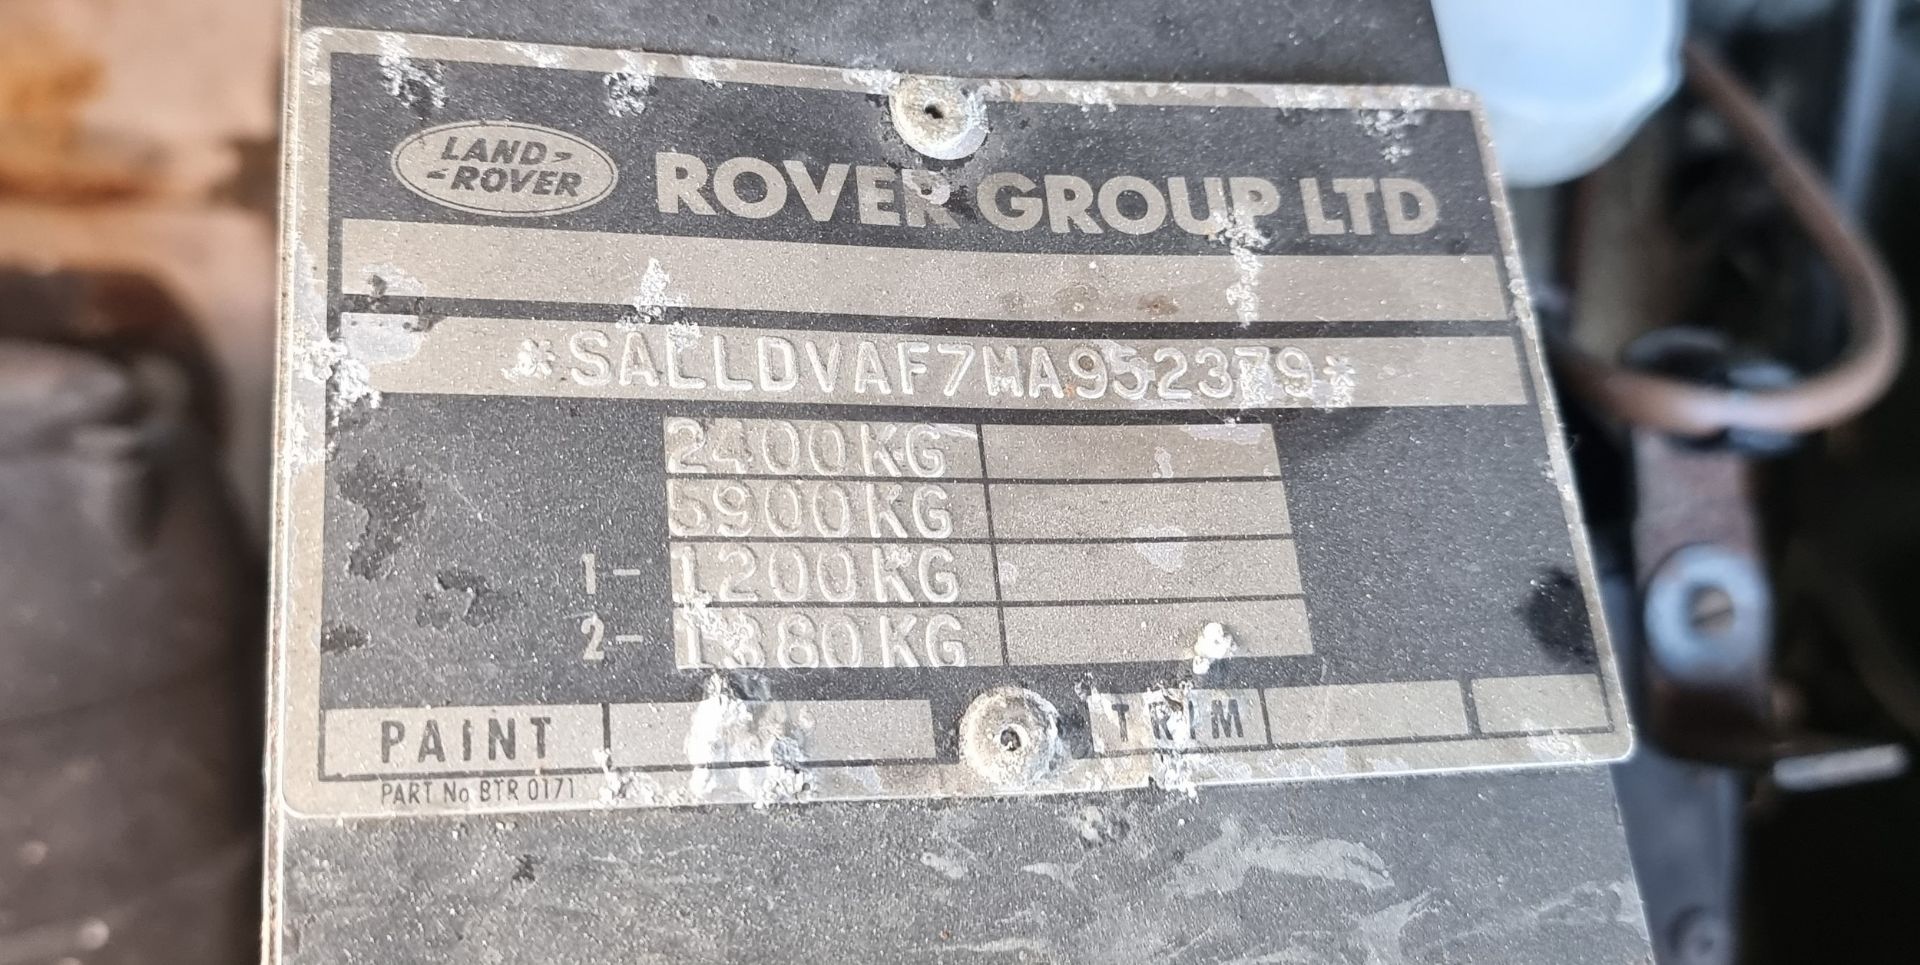 1994 LAND ROVER Defender TDi, SWB. Registration number M593 AFL. Chassis number SALLDVAF7MA952379. - Image 22 of 23